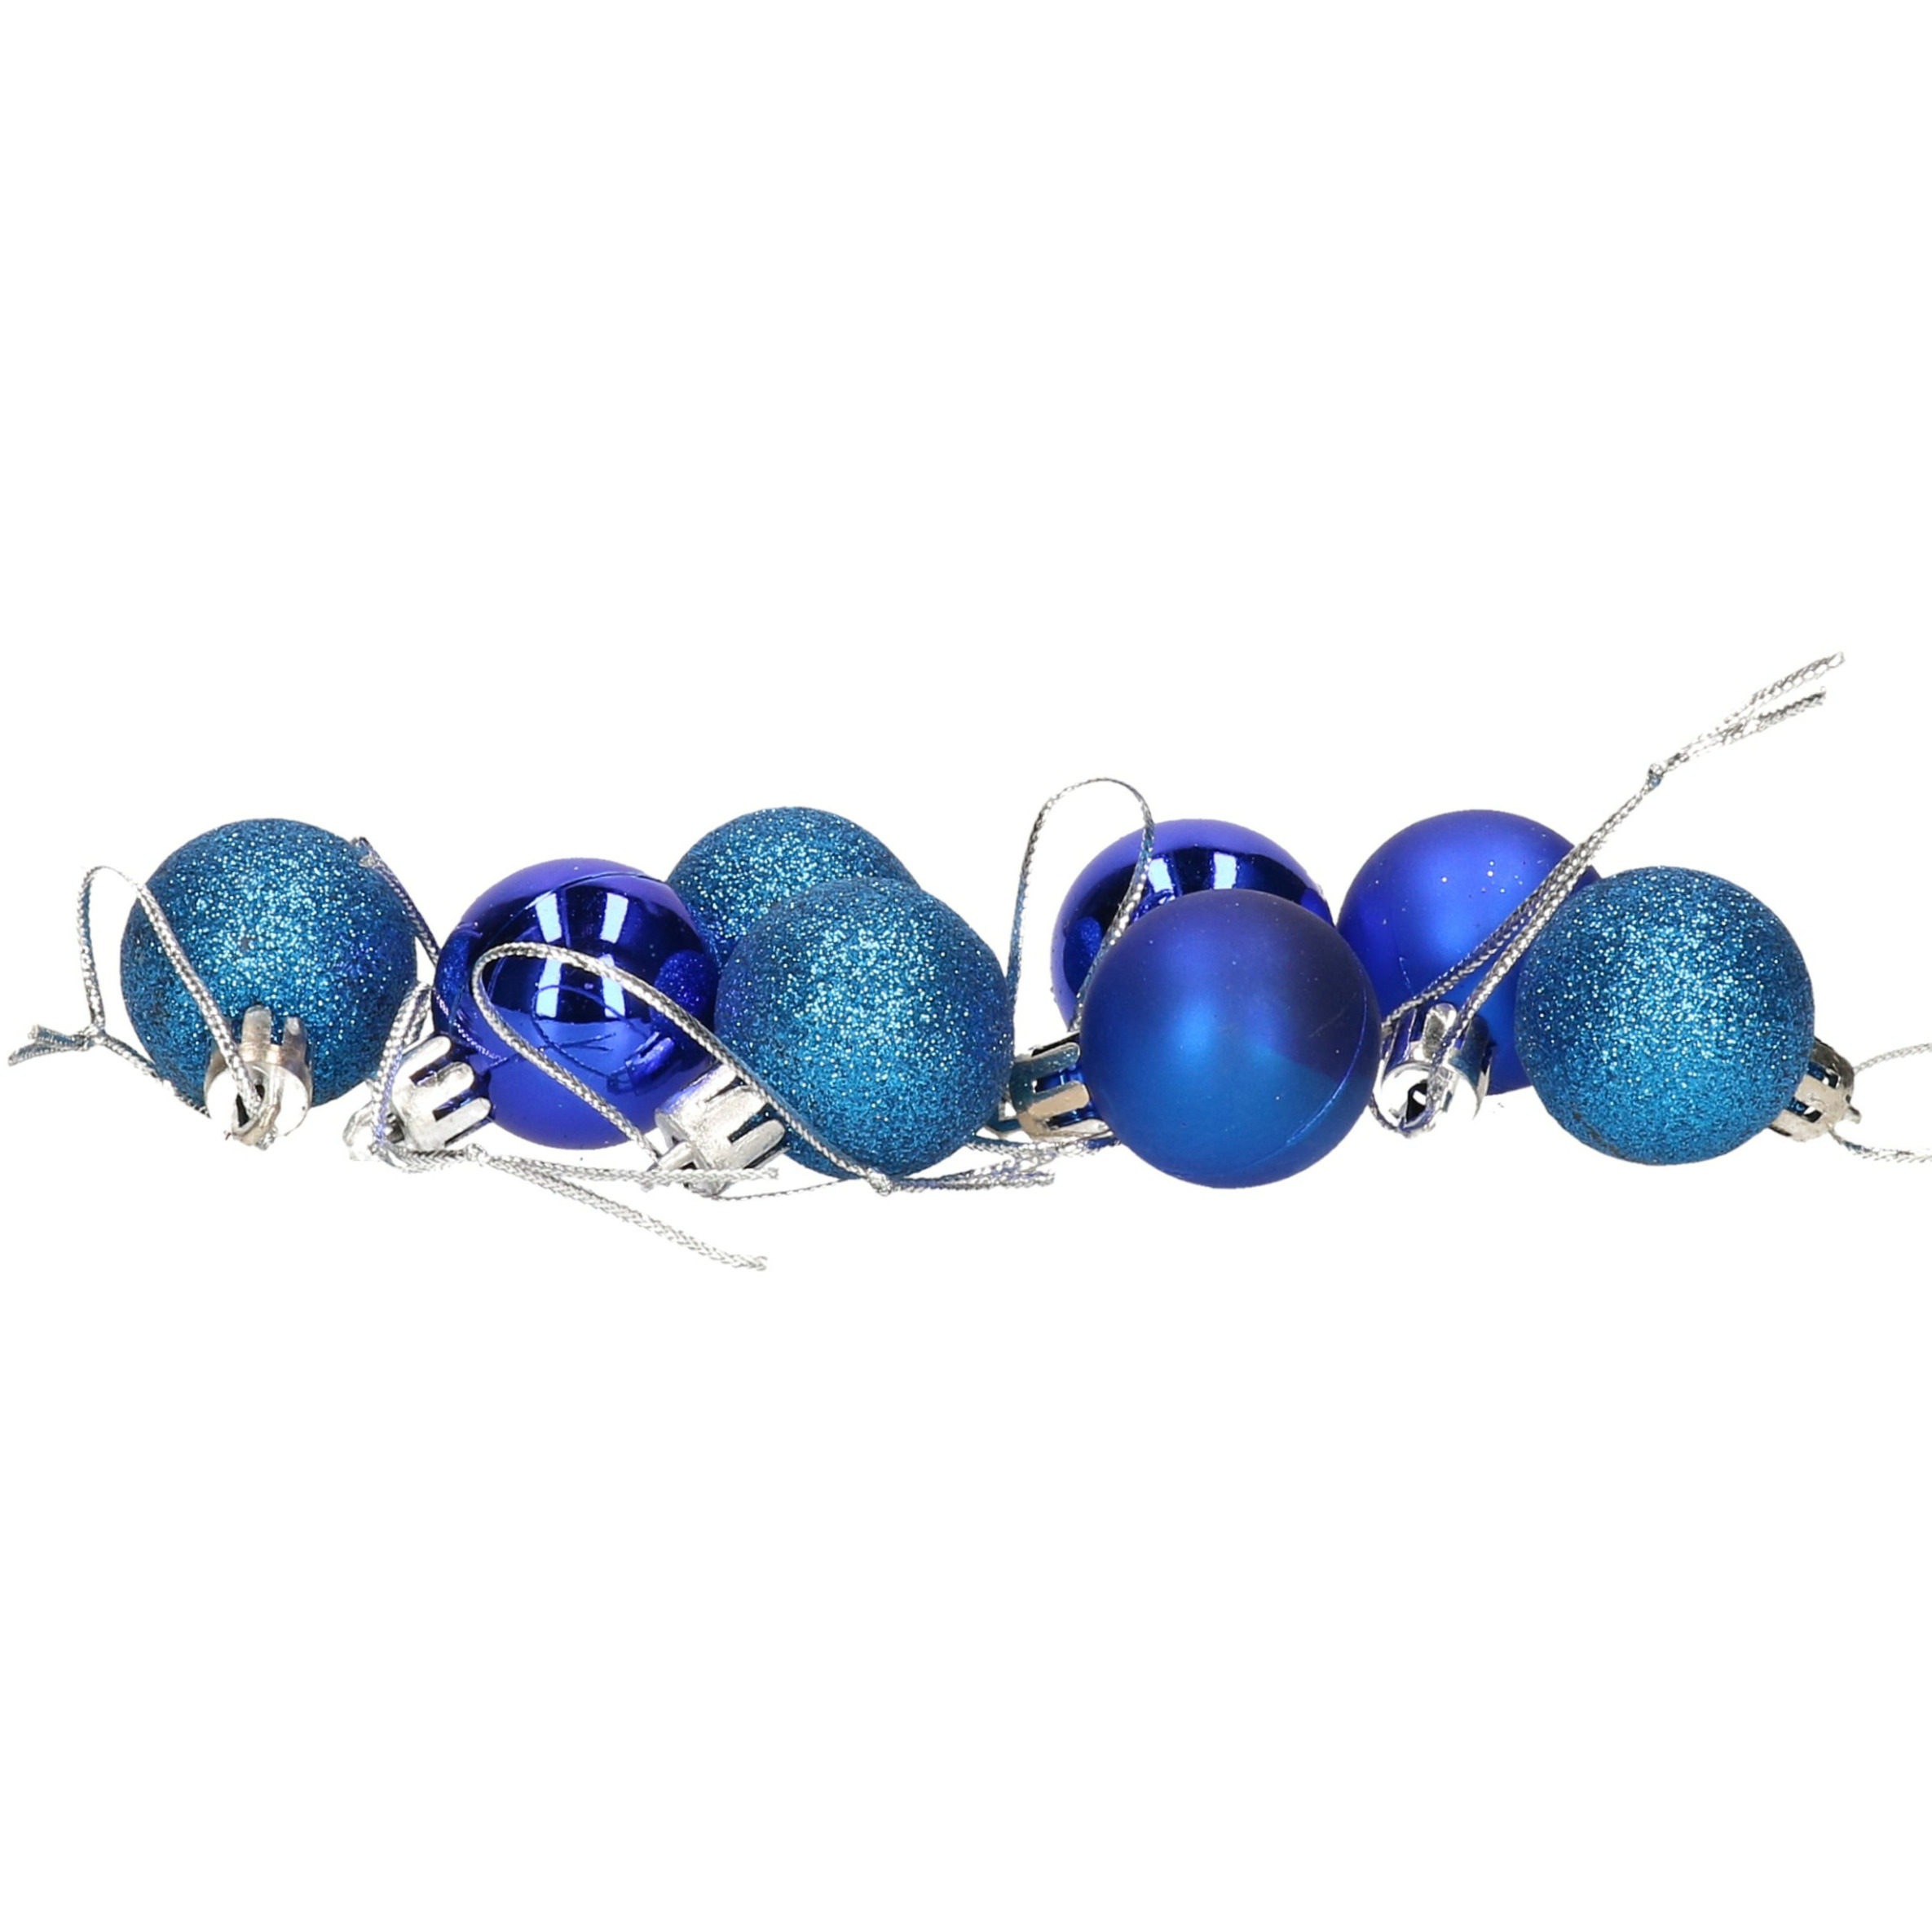 8x stuks kerstballen blauw mix van mat-glans-glitter kunststof 3 cm